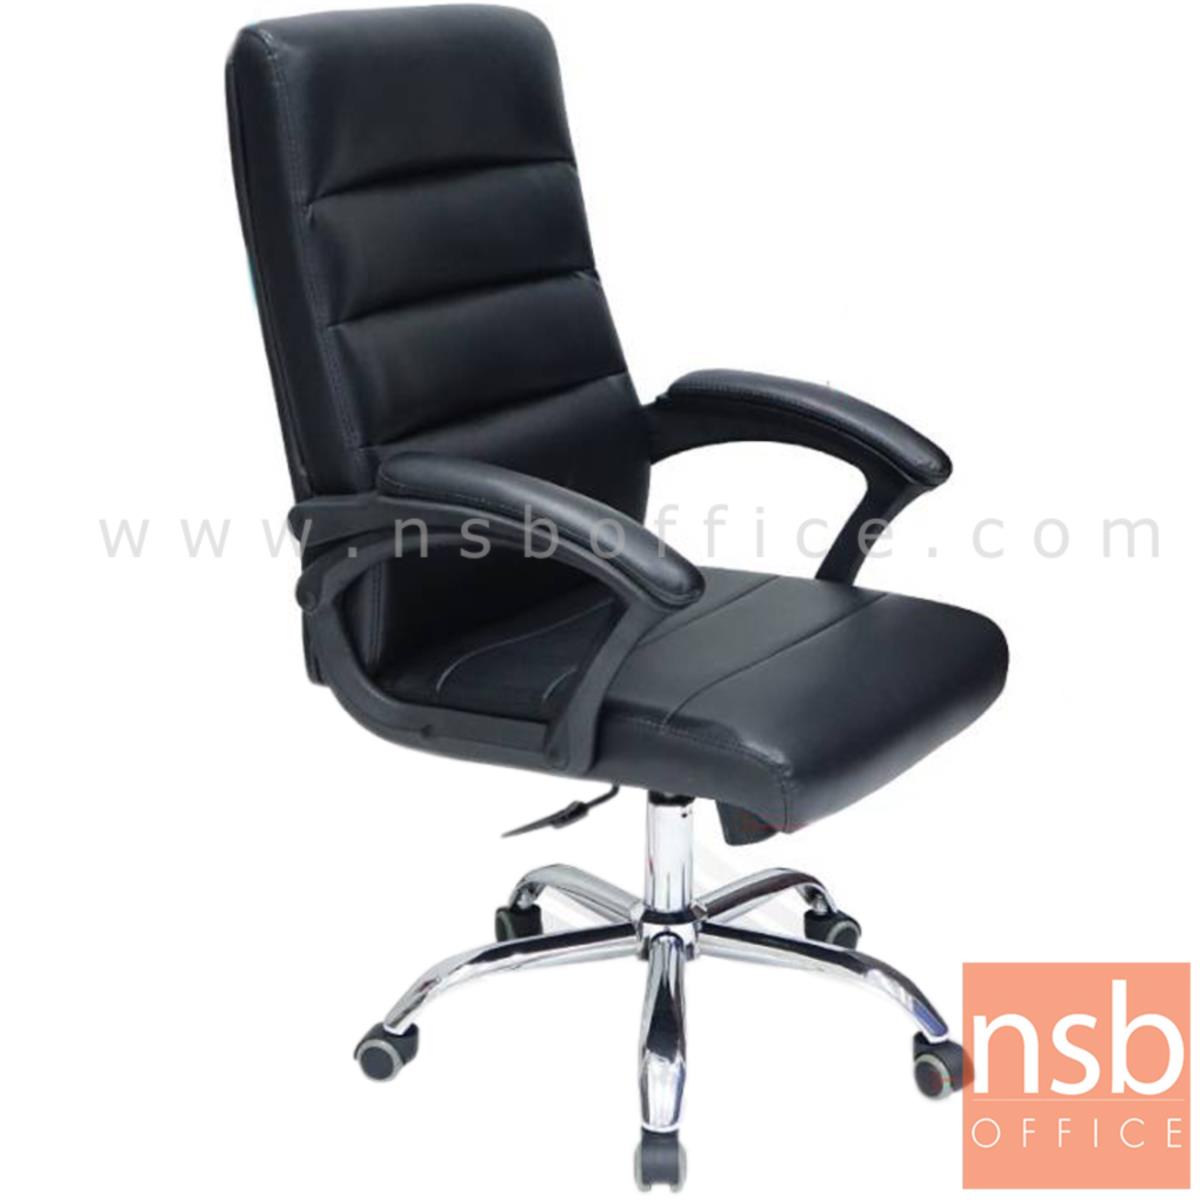 B01A496:เก้าอี้ผู้บริหาร รุ่น VISCARIA (เวสกาเรีย)  โช๊คแก๊ส มีก้อนโยก ขาเหล็กชุบโครเมี่ยม